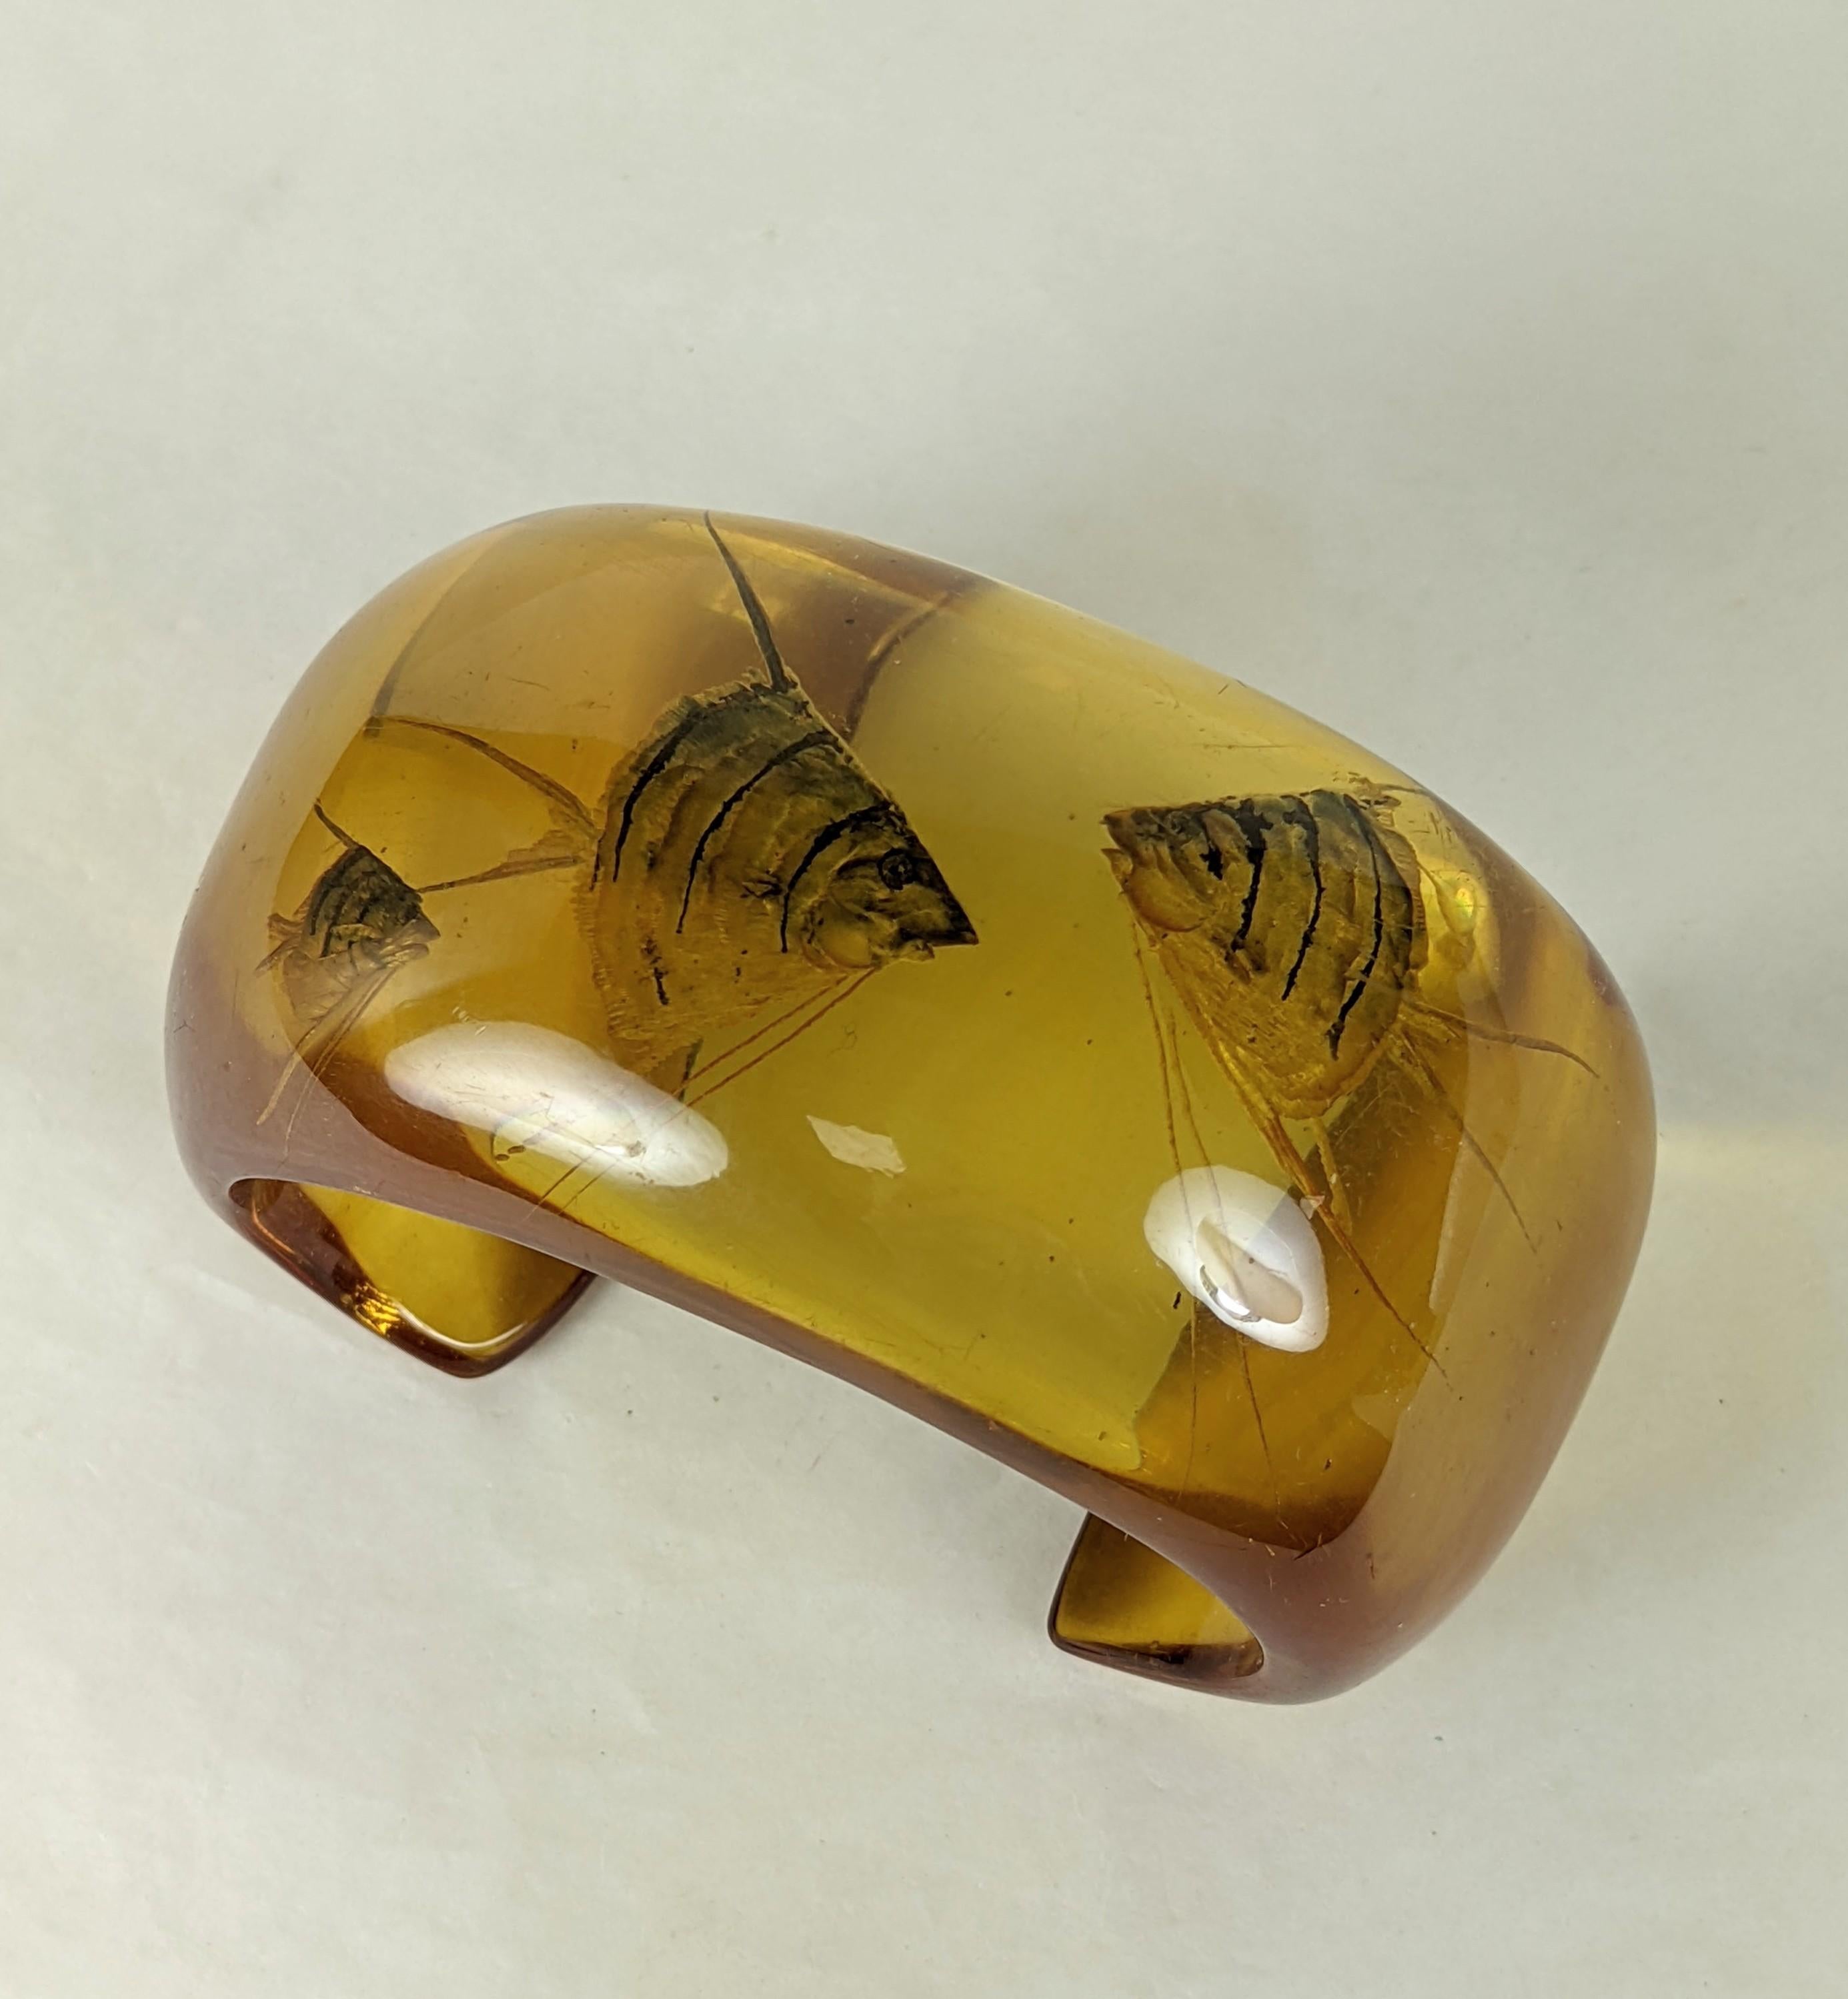 Außergewöhnliche und seltene Art Deco Reverse geschnitzt Apfelsaft Aquarium Bakelit Manschette aus den 1930er Jahren. Rückseitig geschnitzt mit 3 fein detaillierten Skalaren, die dann realistisch in schillernden Perlmutttönen übermalt sind.  1 5/8